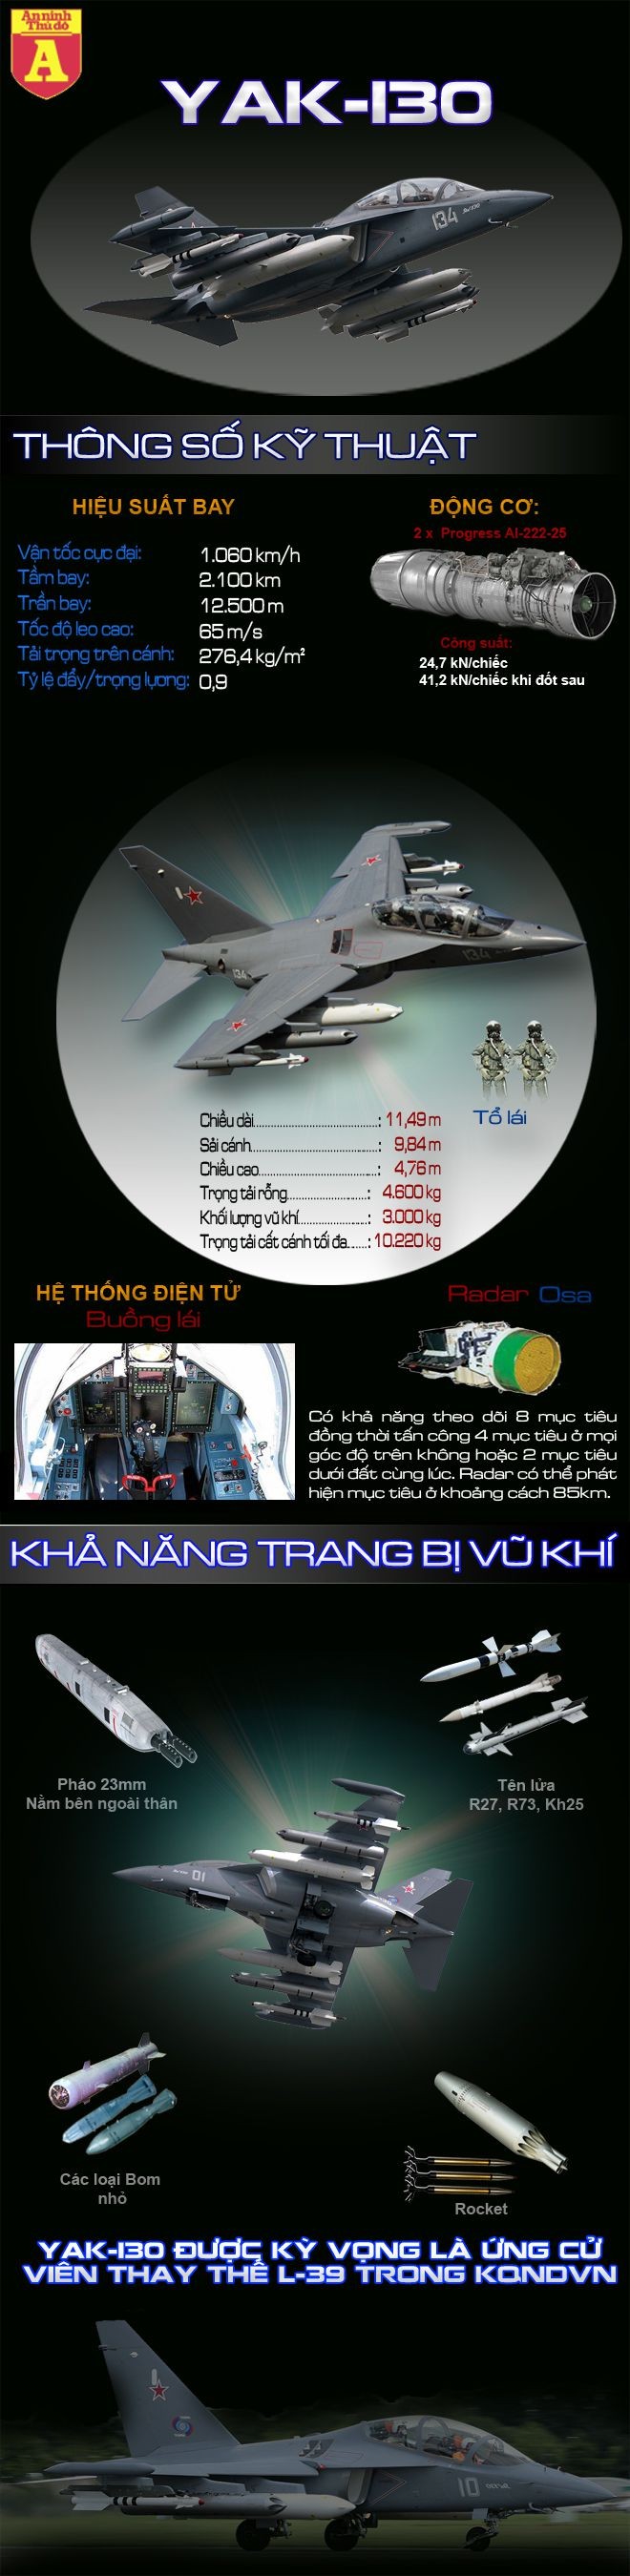 [Infographic] Chiến binh thay thế L-39 của Việt Nam ảnh 1